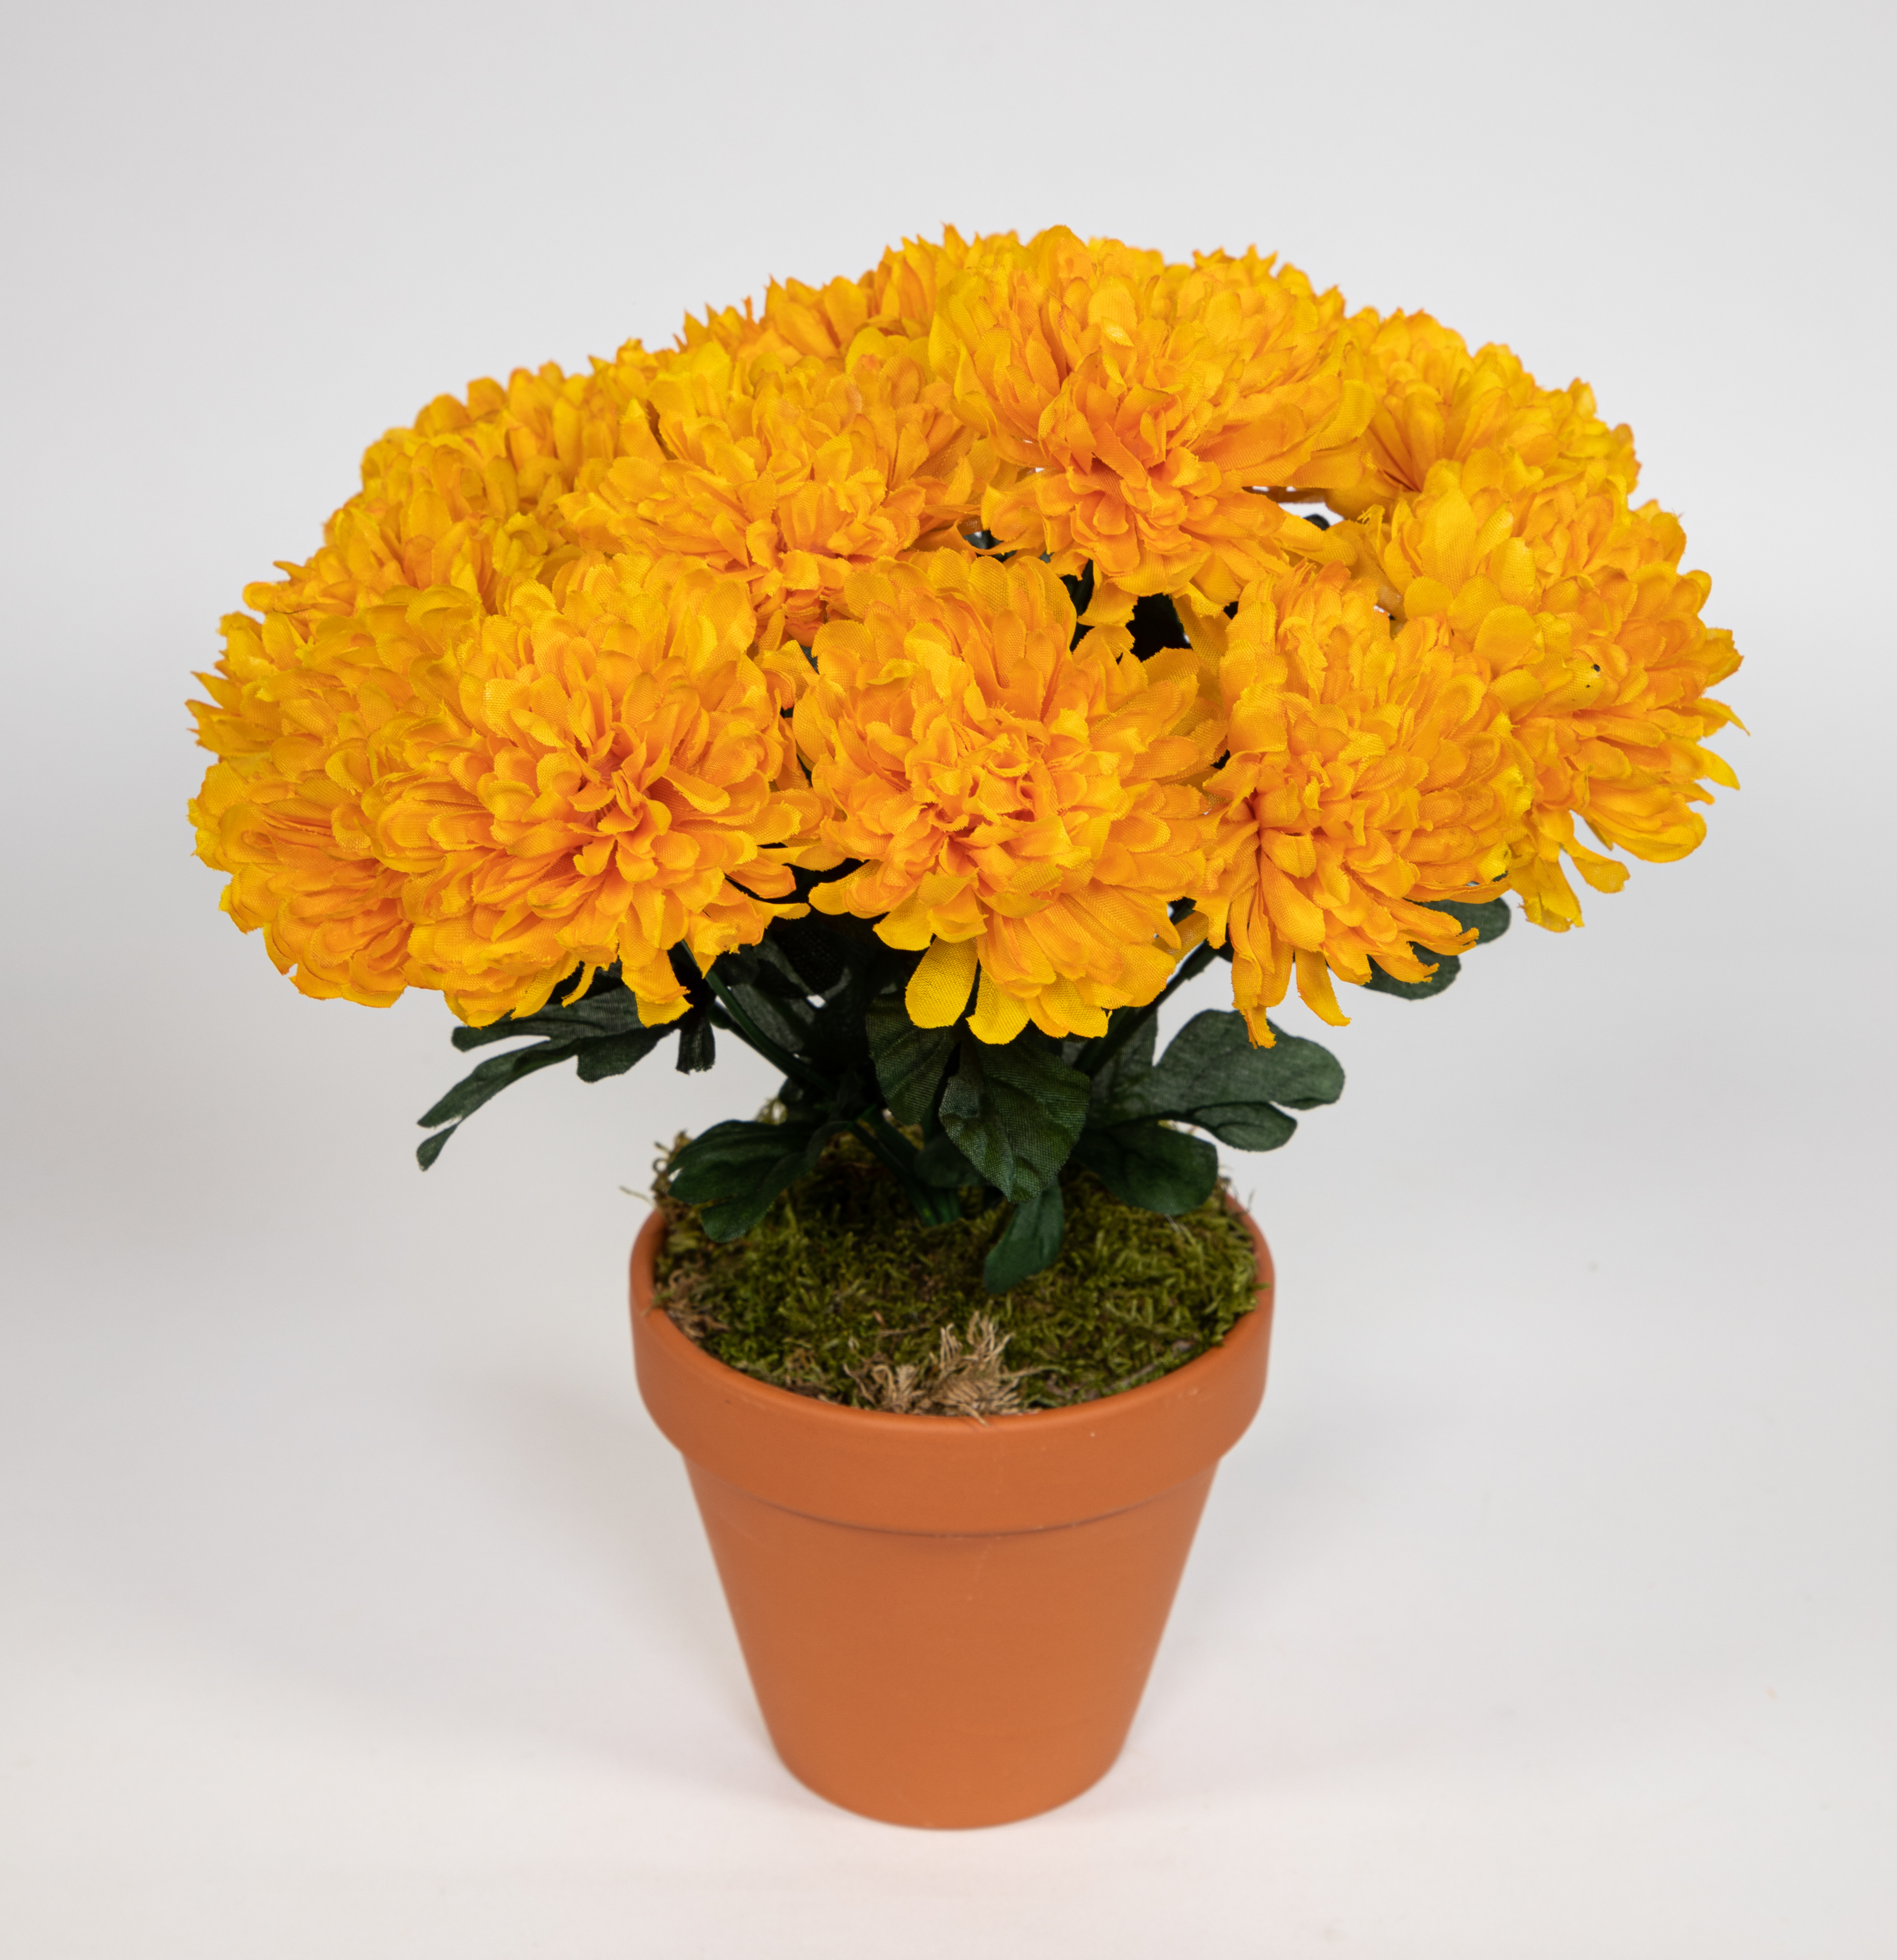 Chrysantheme 30cm gelb im Topf DP Kunstpflanzen künstliche Pflanzen Blumen Kunstblumen